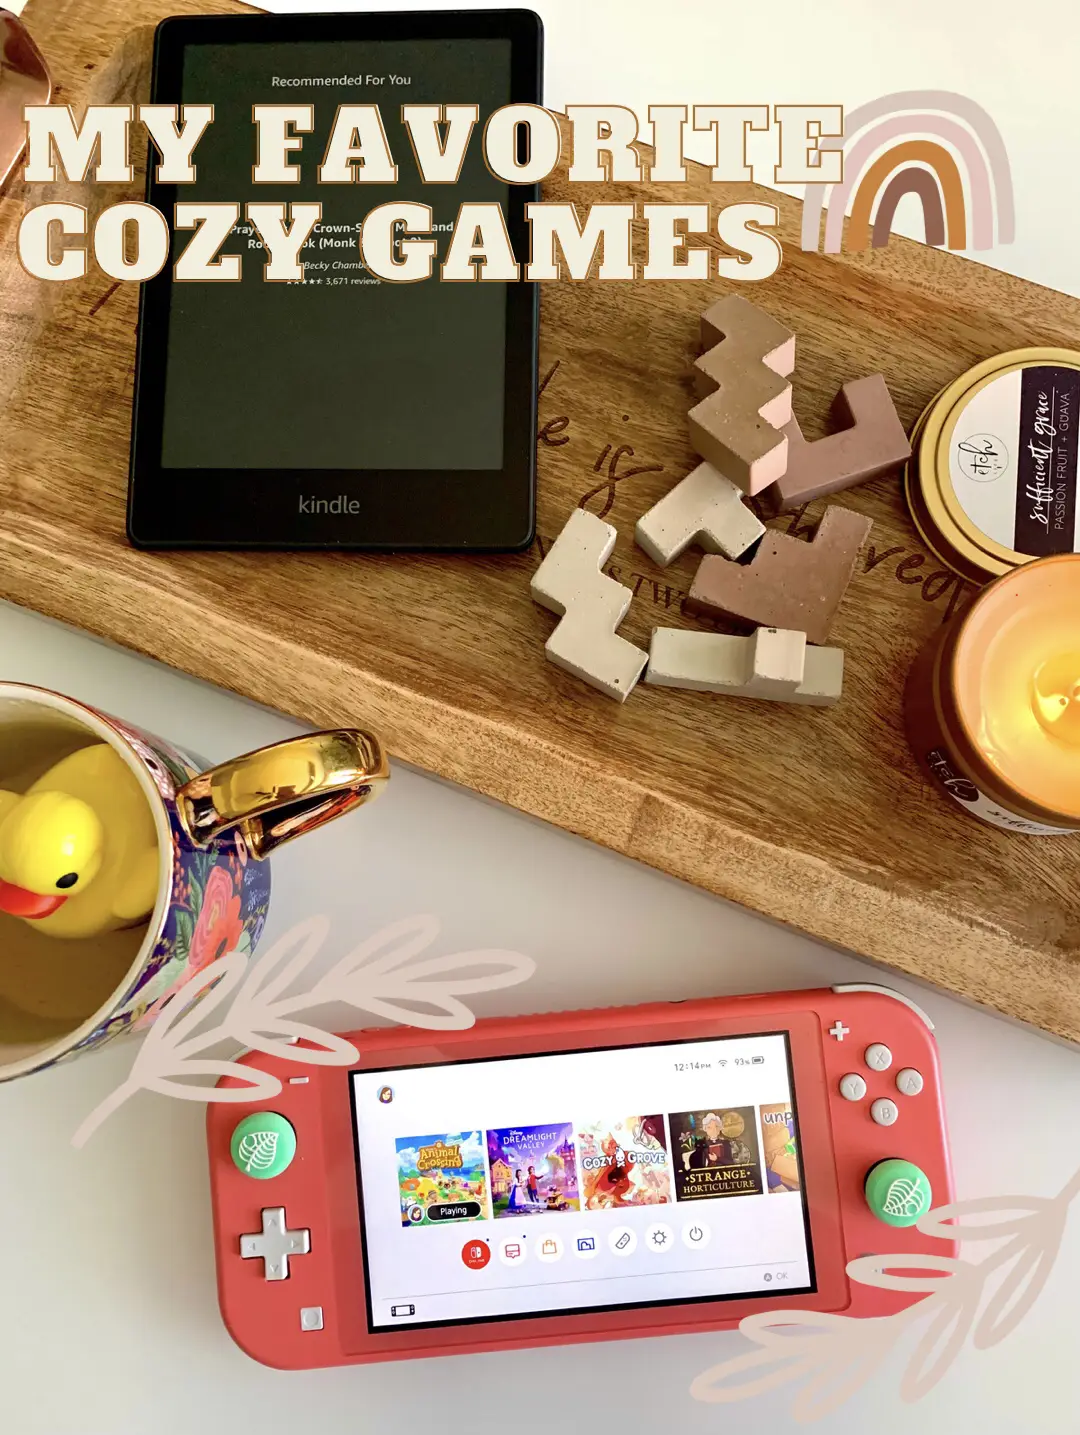 Sudoku Relax, Aplicações de download da Nintendo Switch